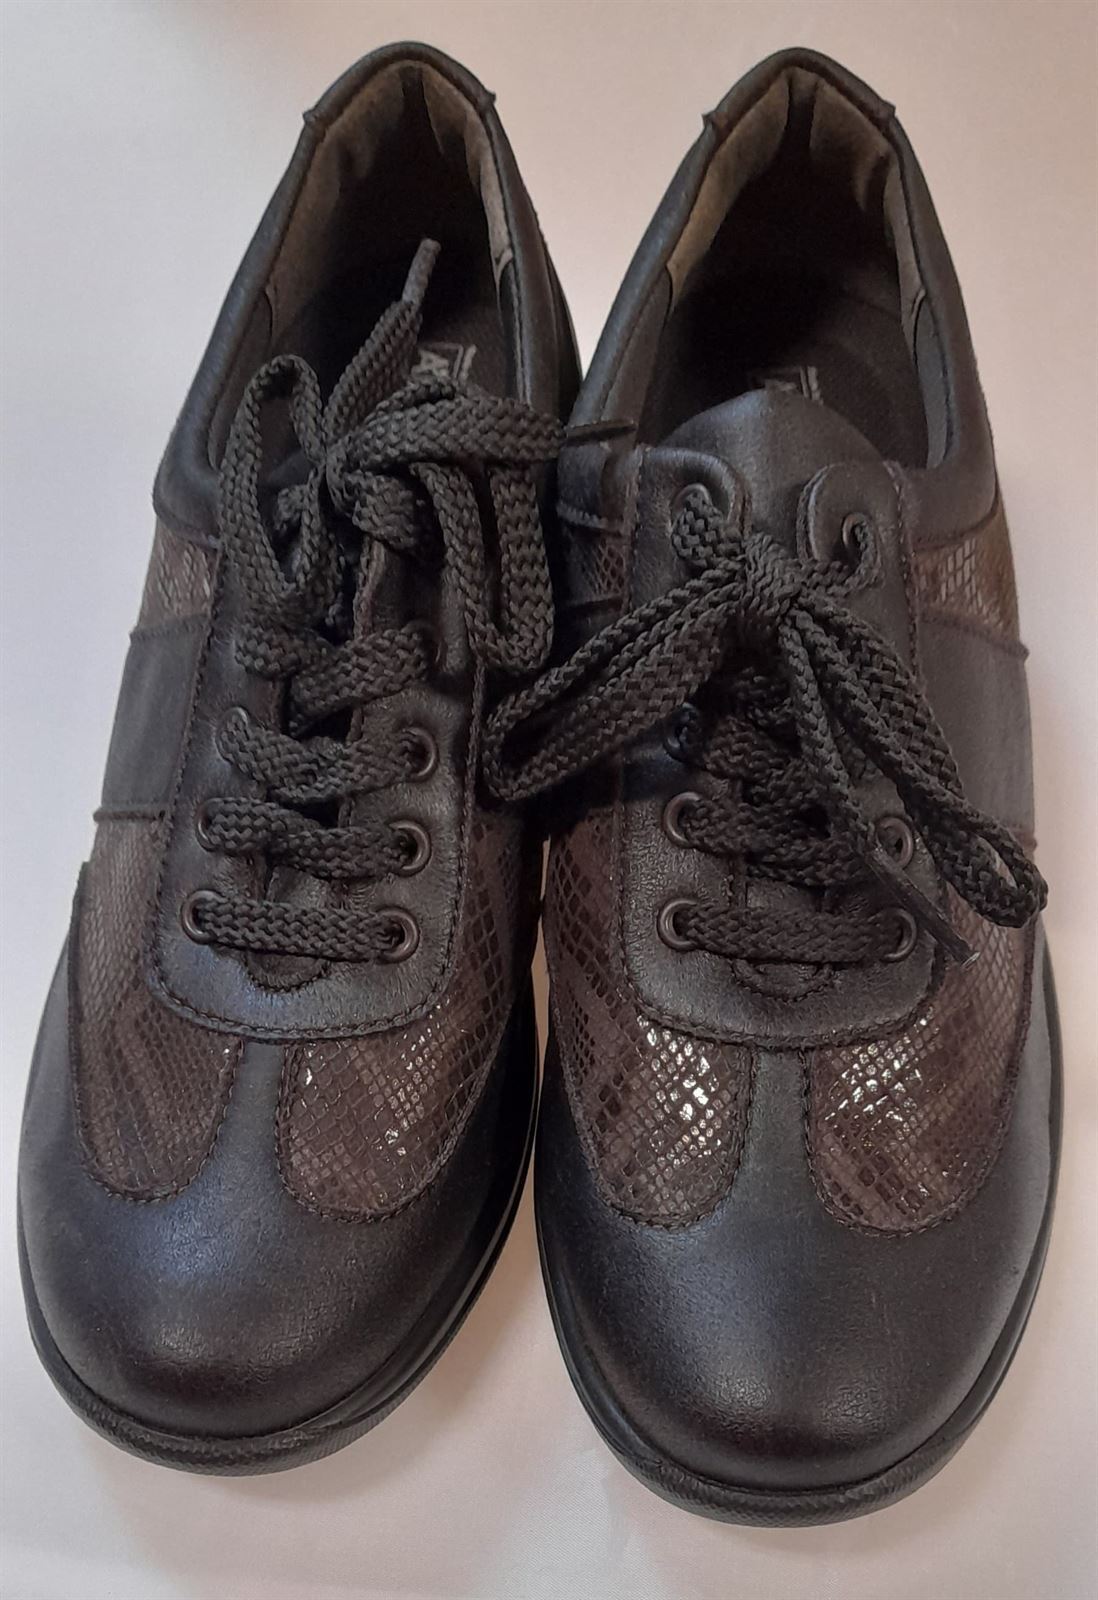 Zapato marrón L73 - Imagen 1